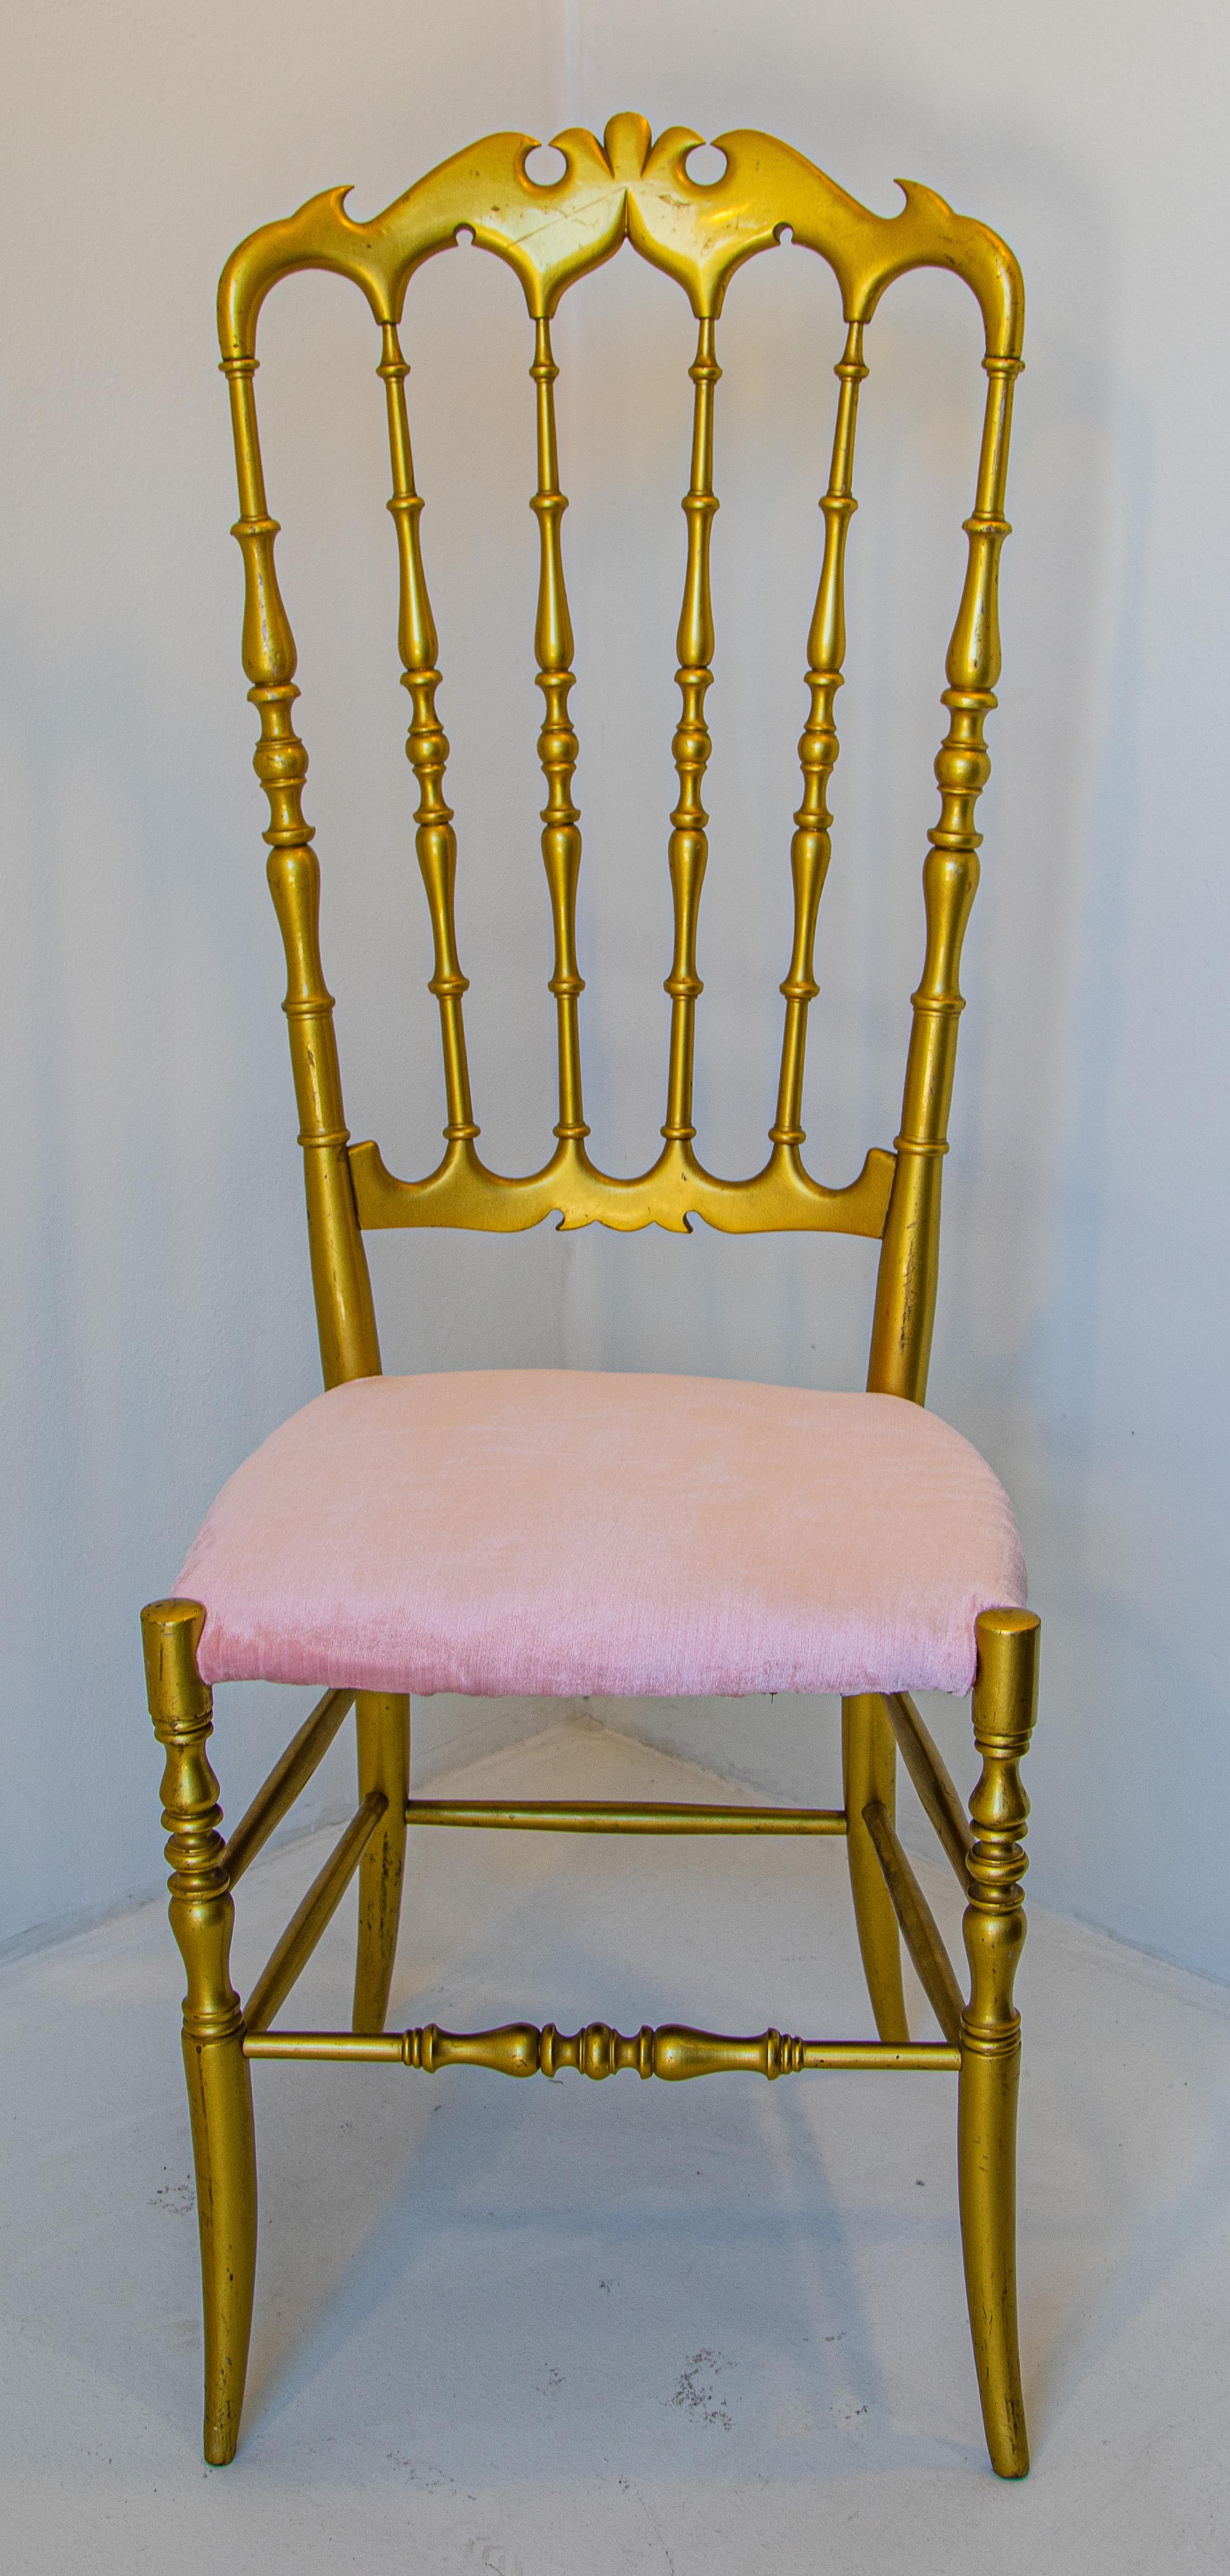 Atemberaubender italienischer Chiavari-Stuhl mit Fledermausmotiv und Samtpolsterung, um 1960.
Entworfen von Giuseppe Gaetano Descalzi und hergestellt seit dem frühen 19. Jahrhundert in der ligurischen Stadt Chiavari, Italien.
Perfekt für den